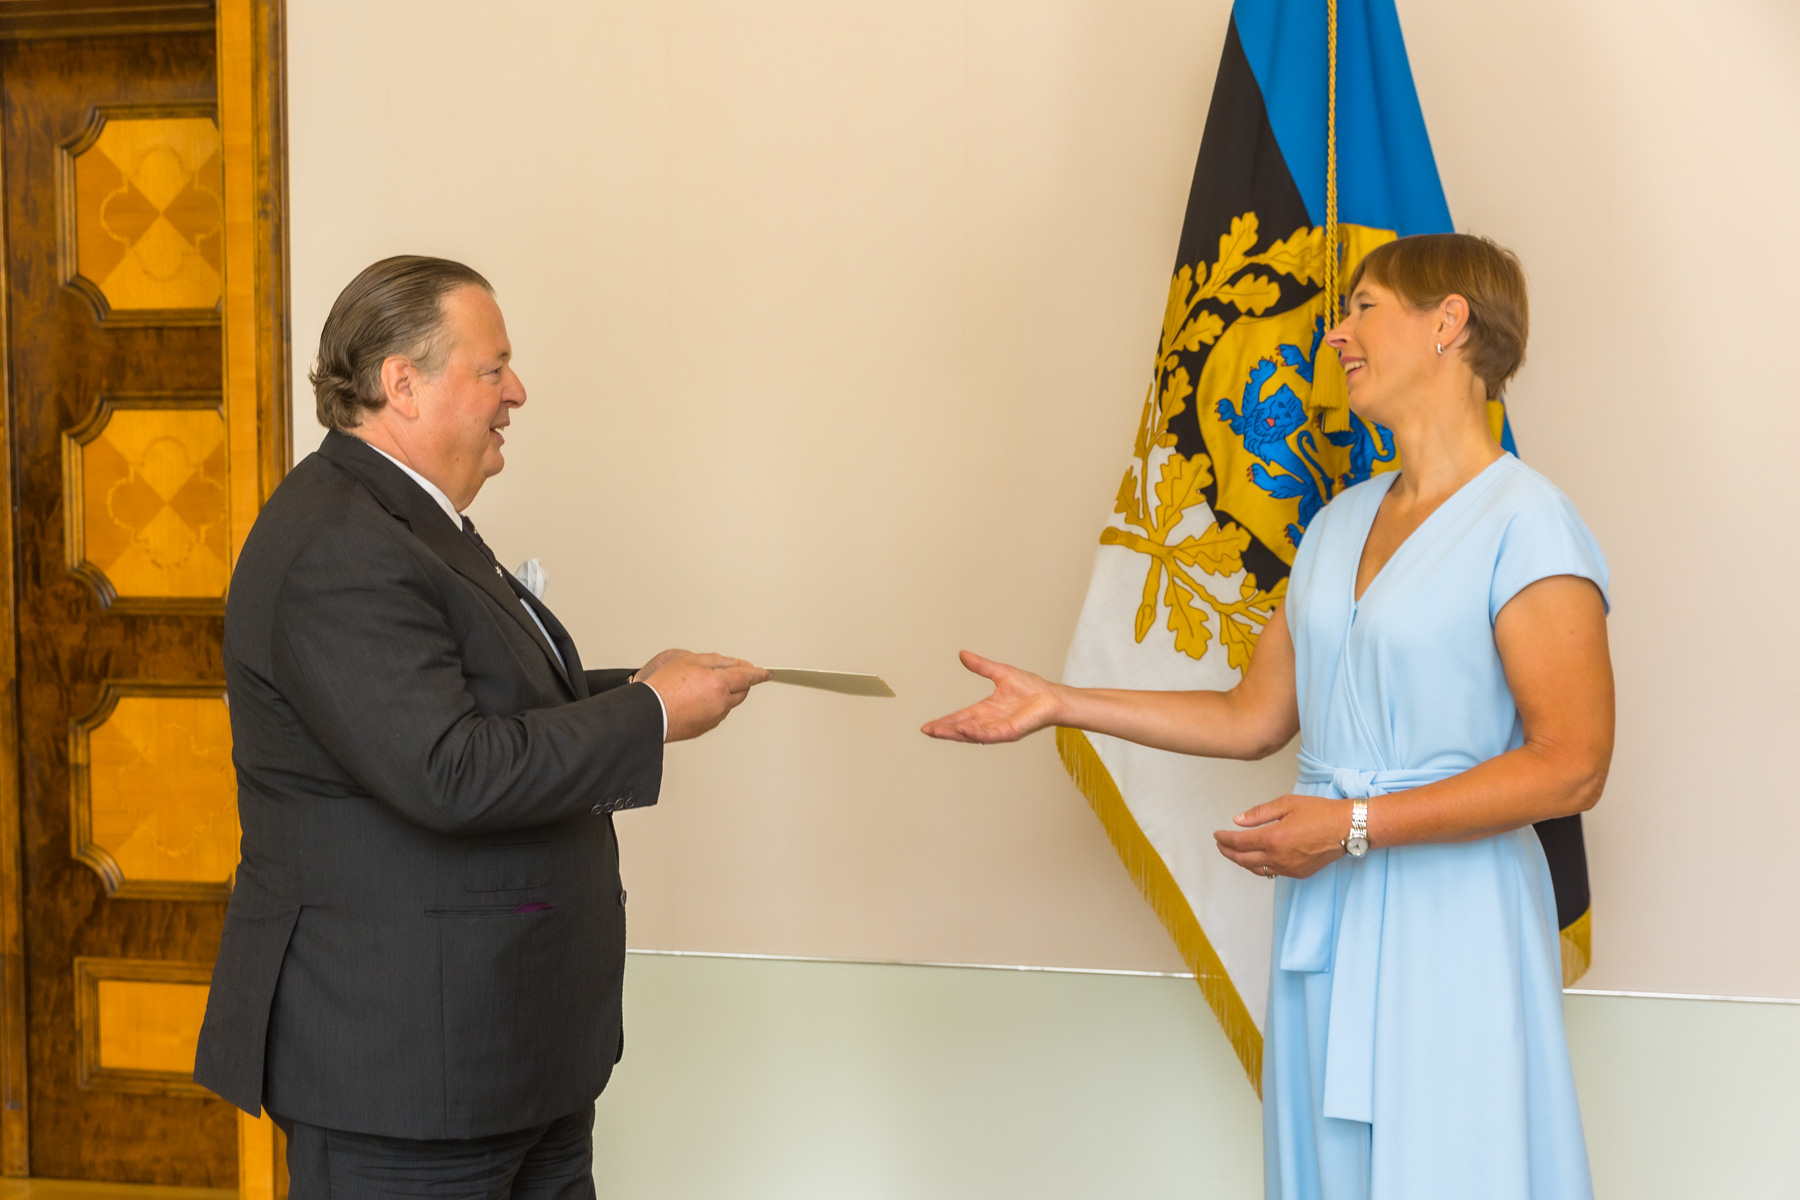 L’ambassadeur de l’Ordre souverain de Malte auprès de l’Estonie a présenté ses lettres de créance